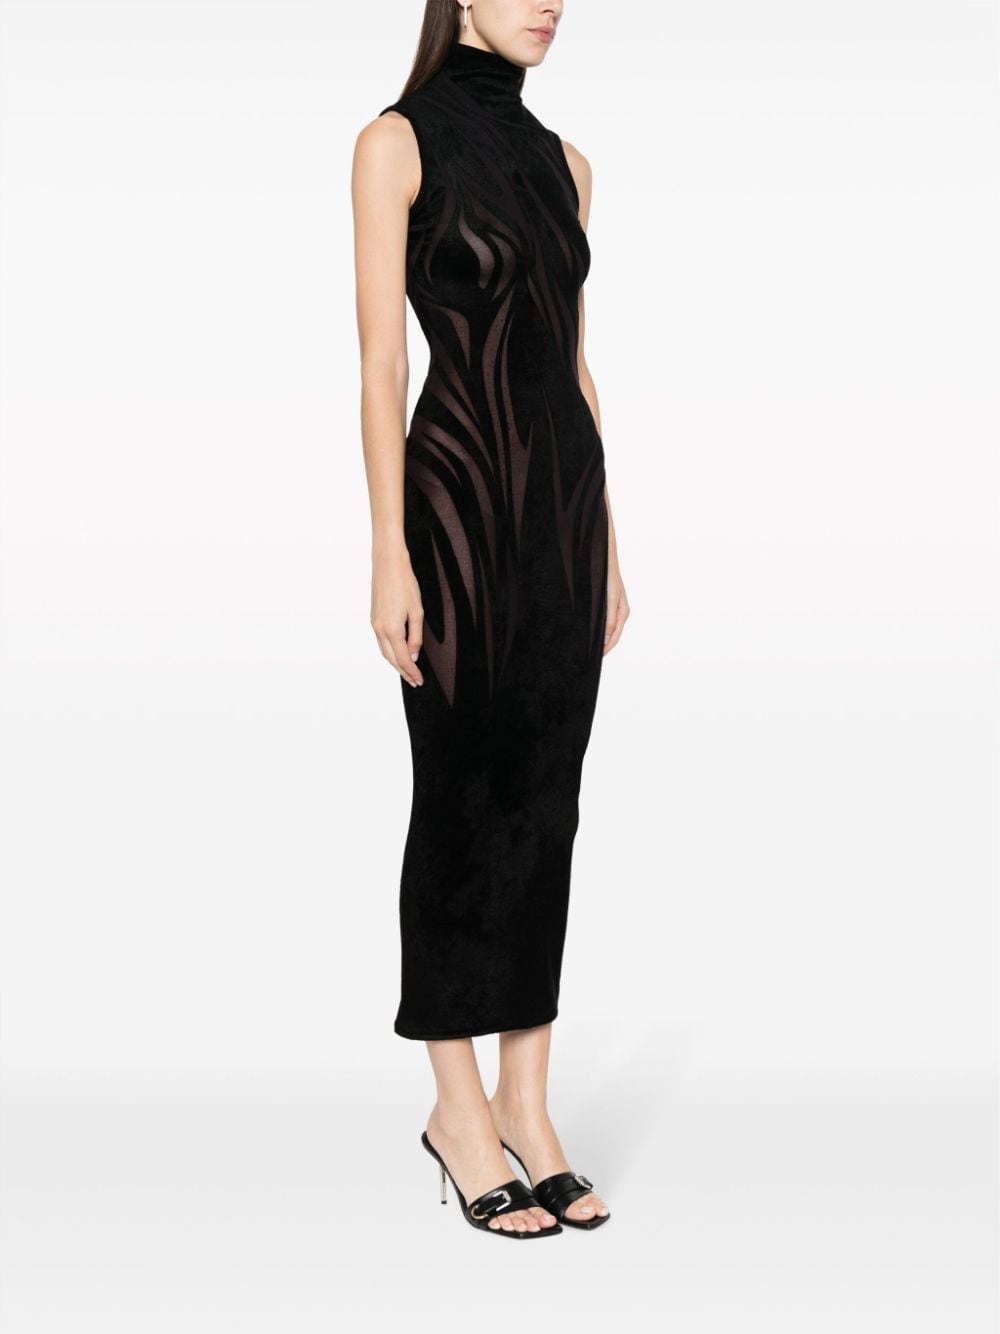 Sheer High-Neck Dress - Sleeveless Long Black Dress for Women FW23